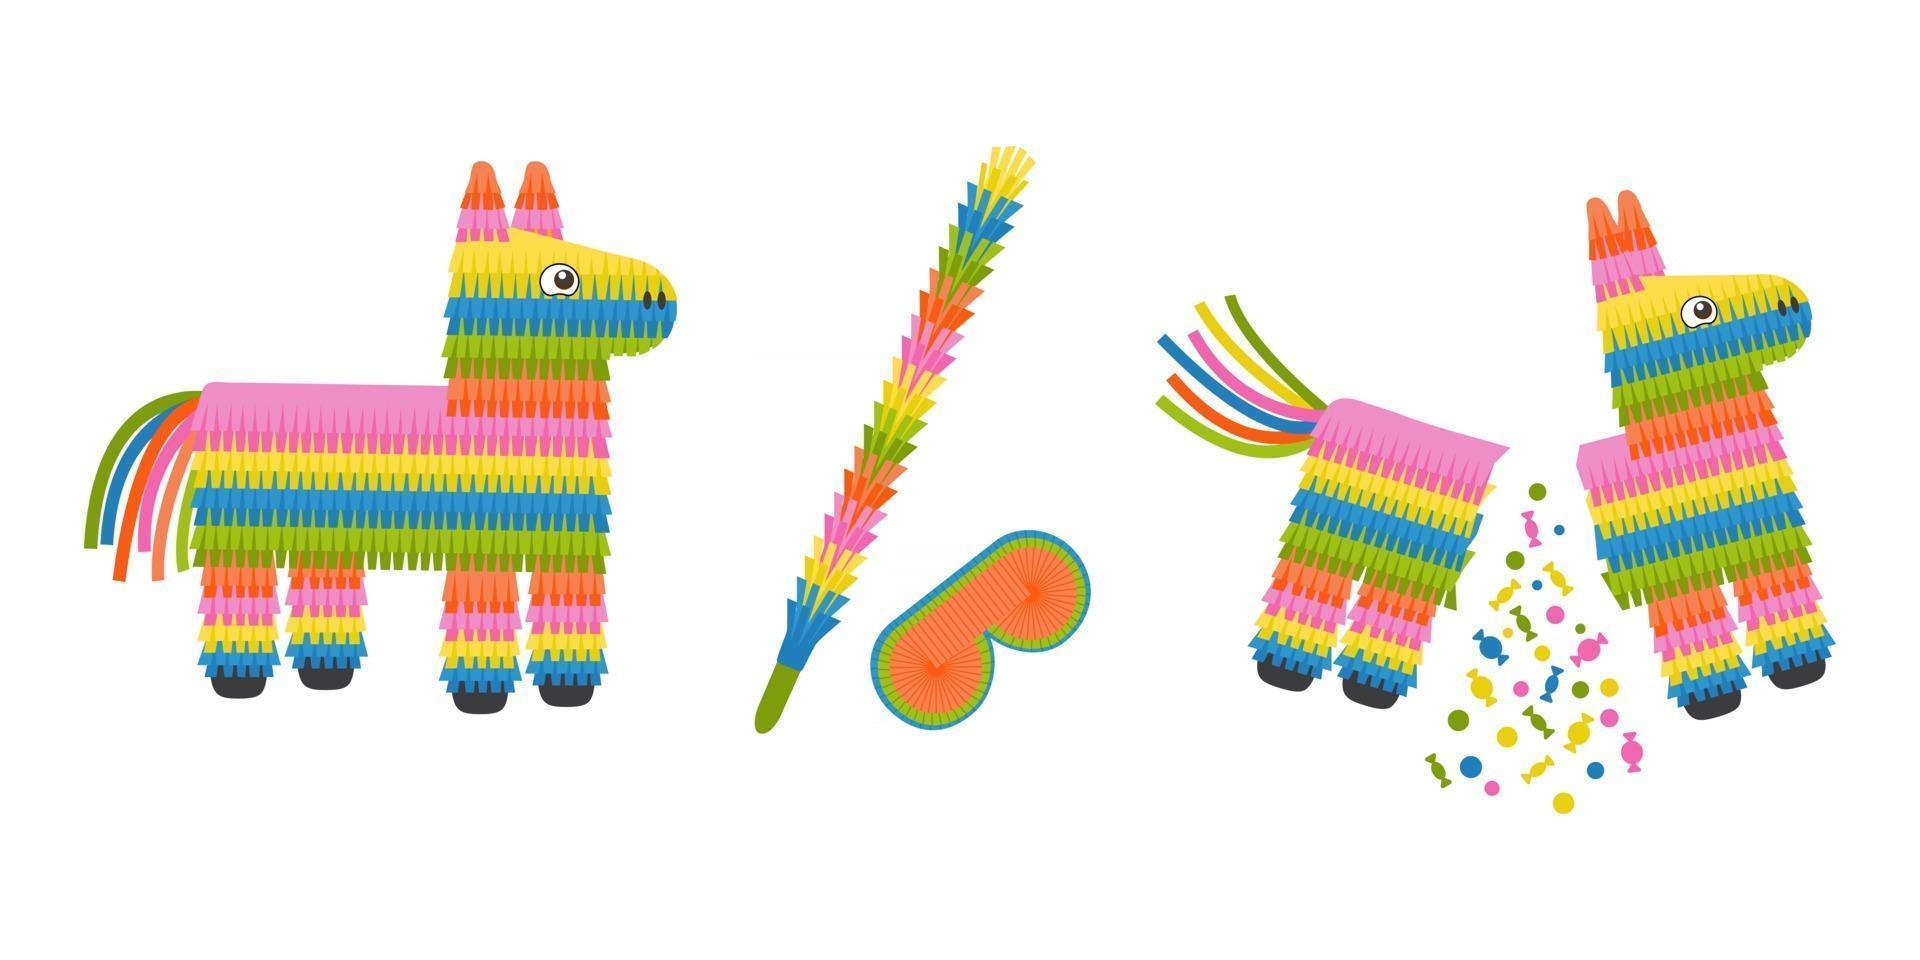 burro piñata entera y rota, llena y vacía. Juguete tradicional mexicano con dulces para fiesta de cumpleaños. vector